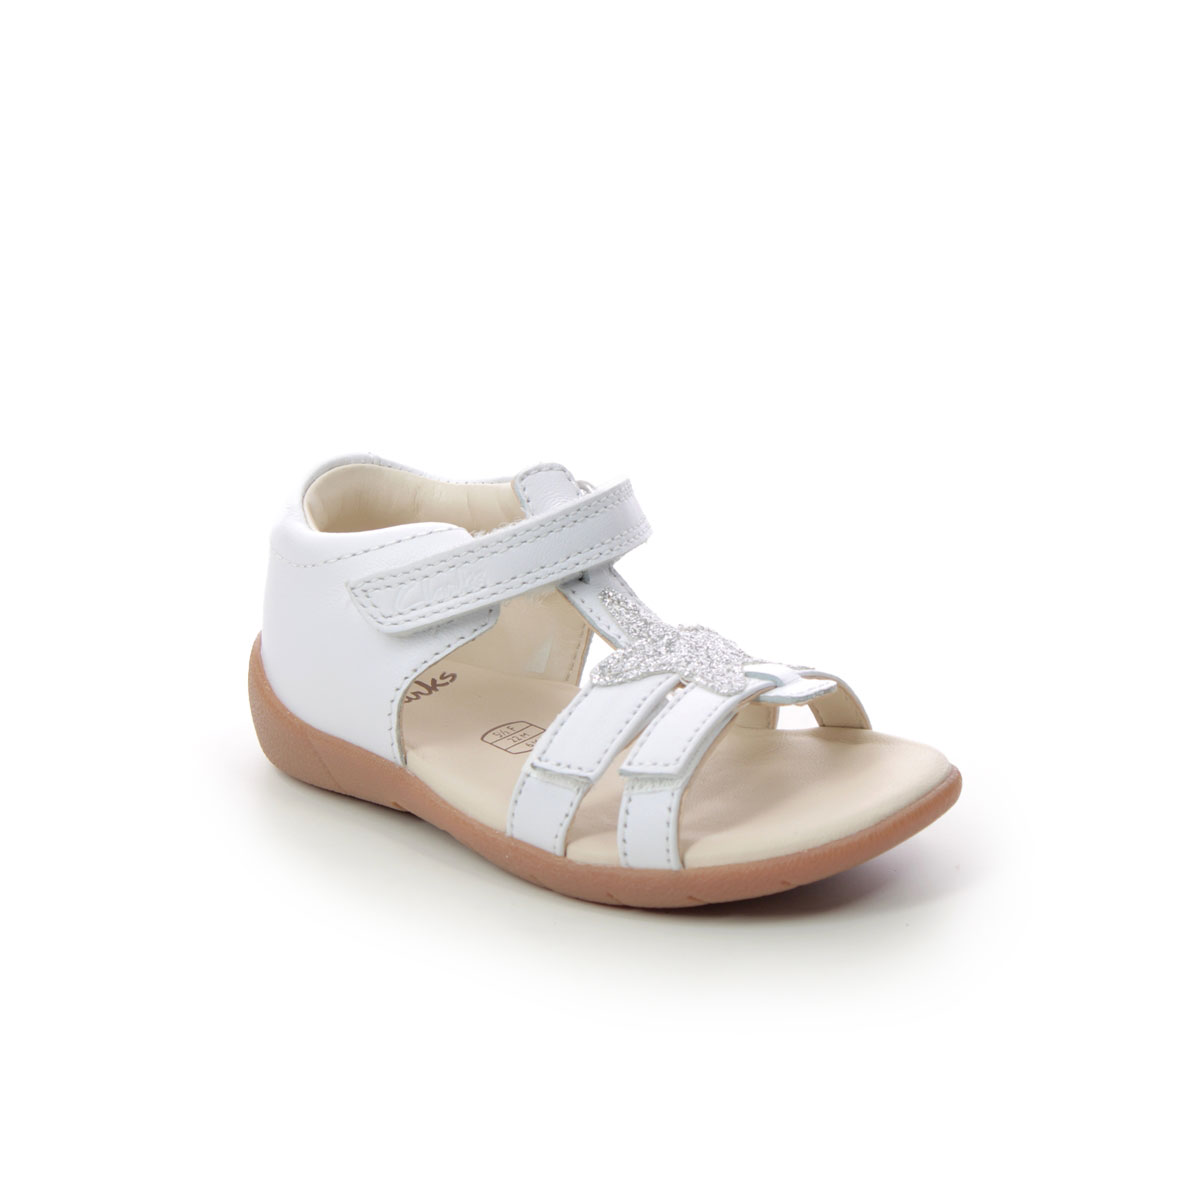 miste dig selv automatisk Shetland Clarks Zora Summer T F Fit WHITE LEATHER sandals